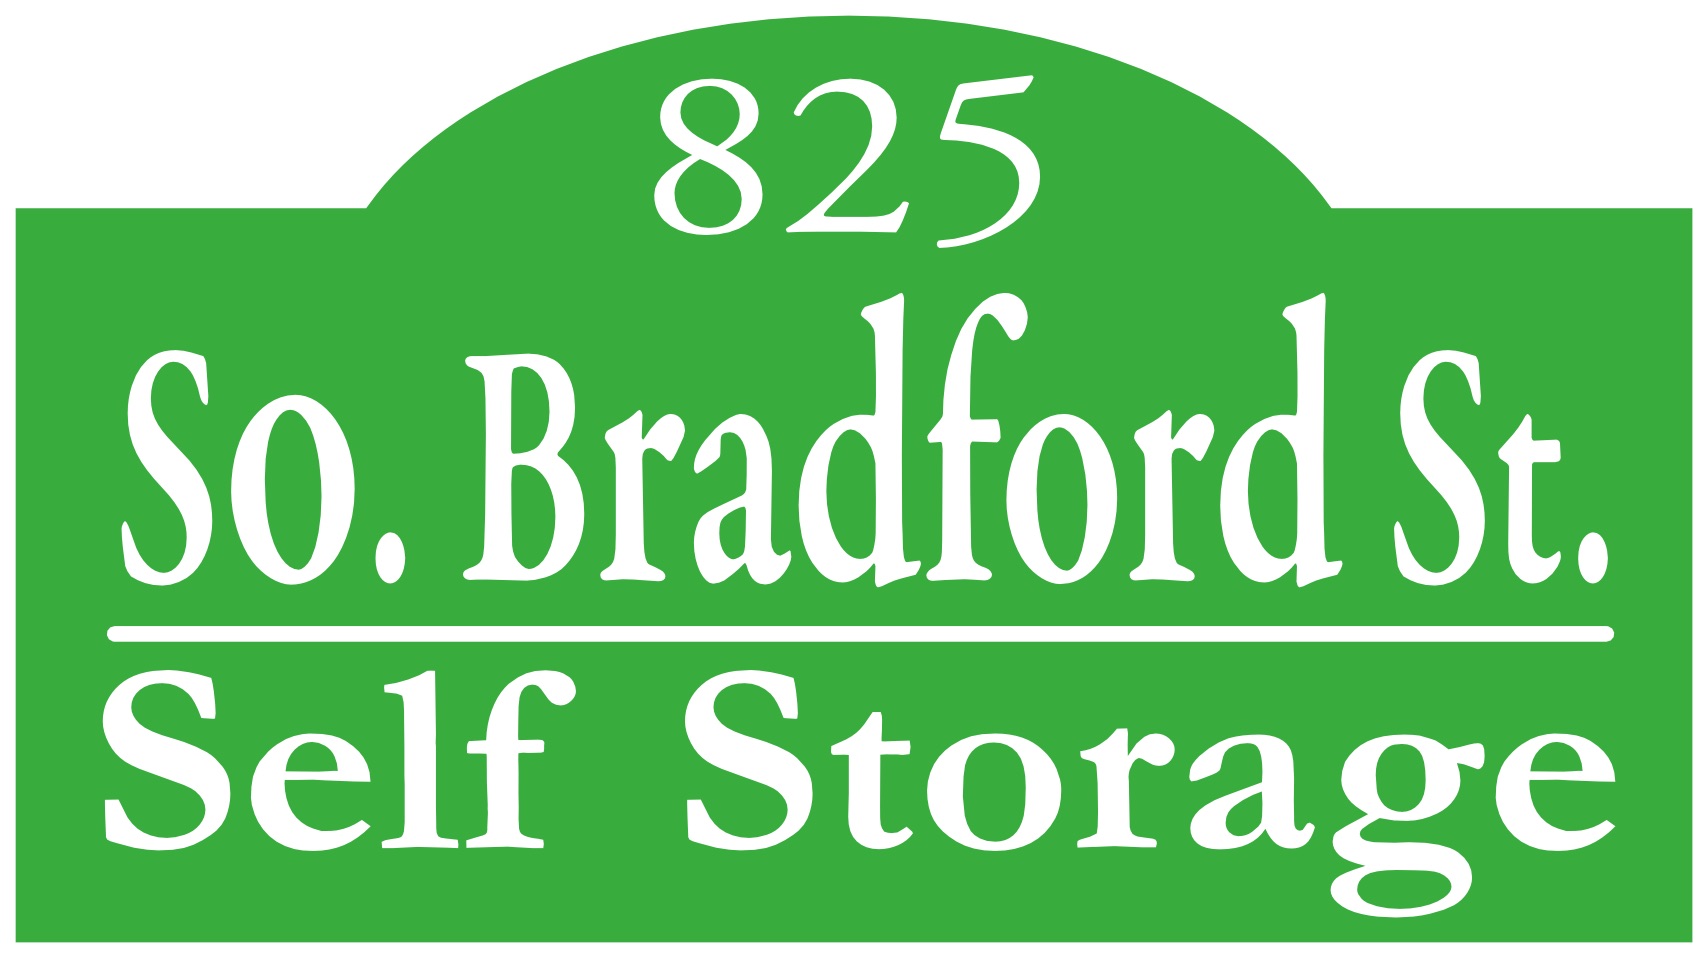 So. Bradford St. Self Storage